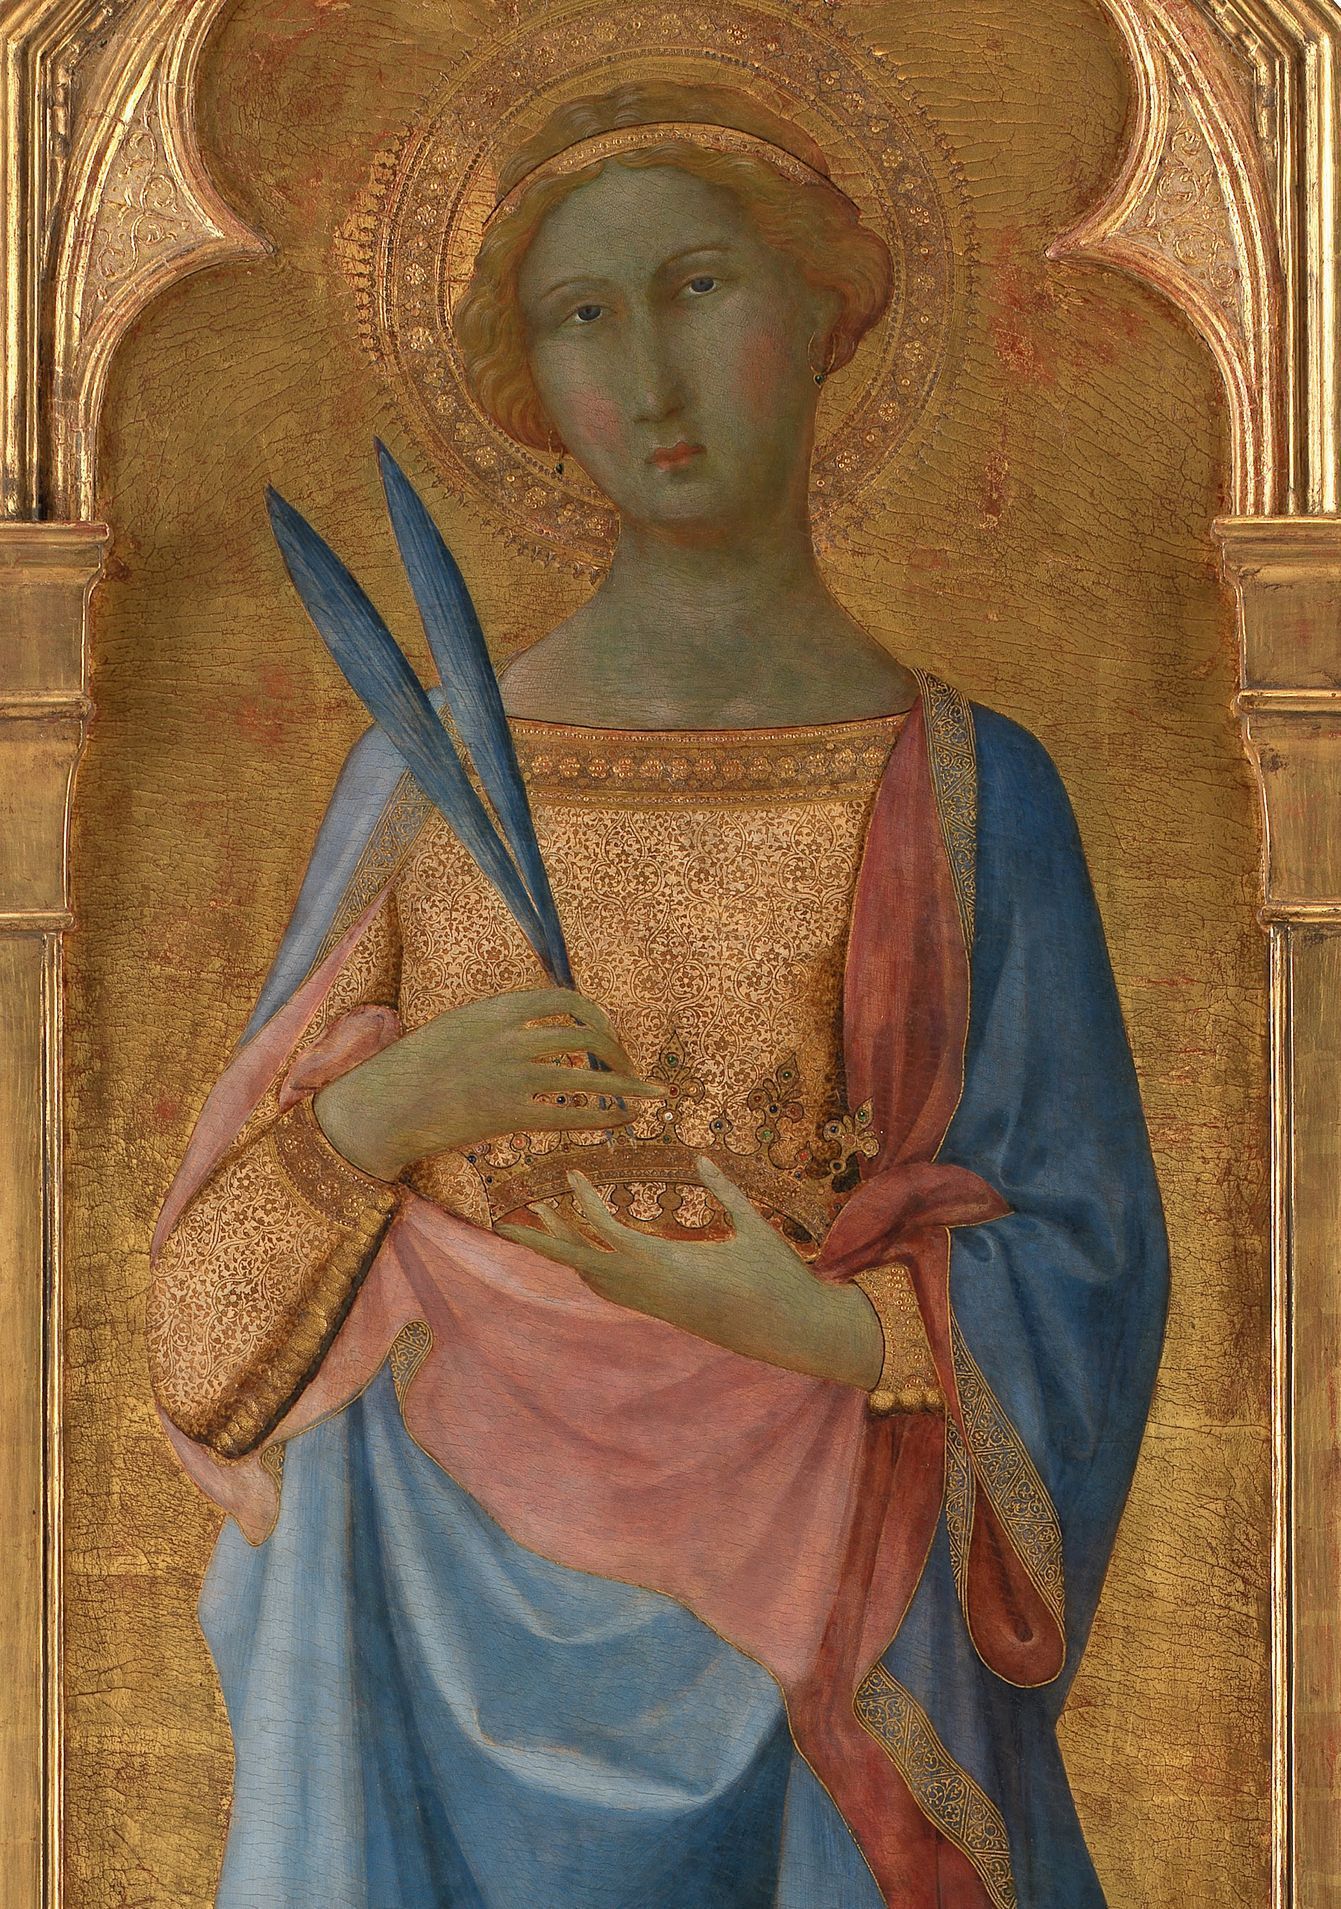 Svatá Korona na obraze, který je datován do poloviny 14. století. Jako autoři jsou uváděni Lippo Memmi a Simone Martini